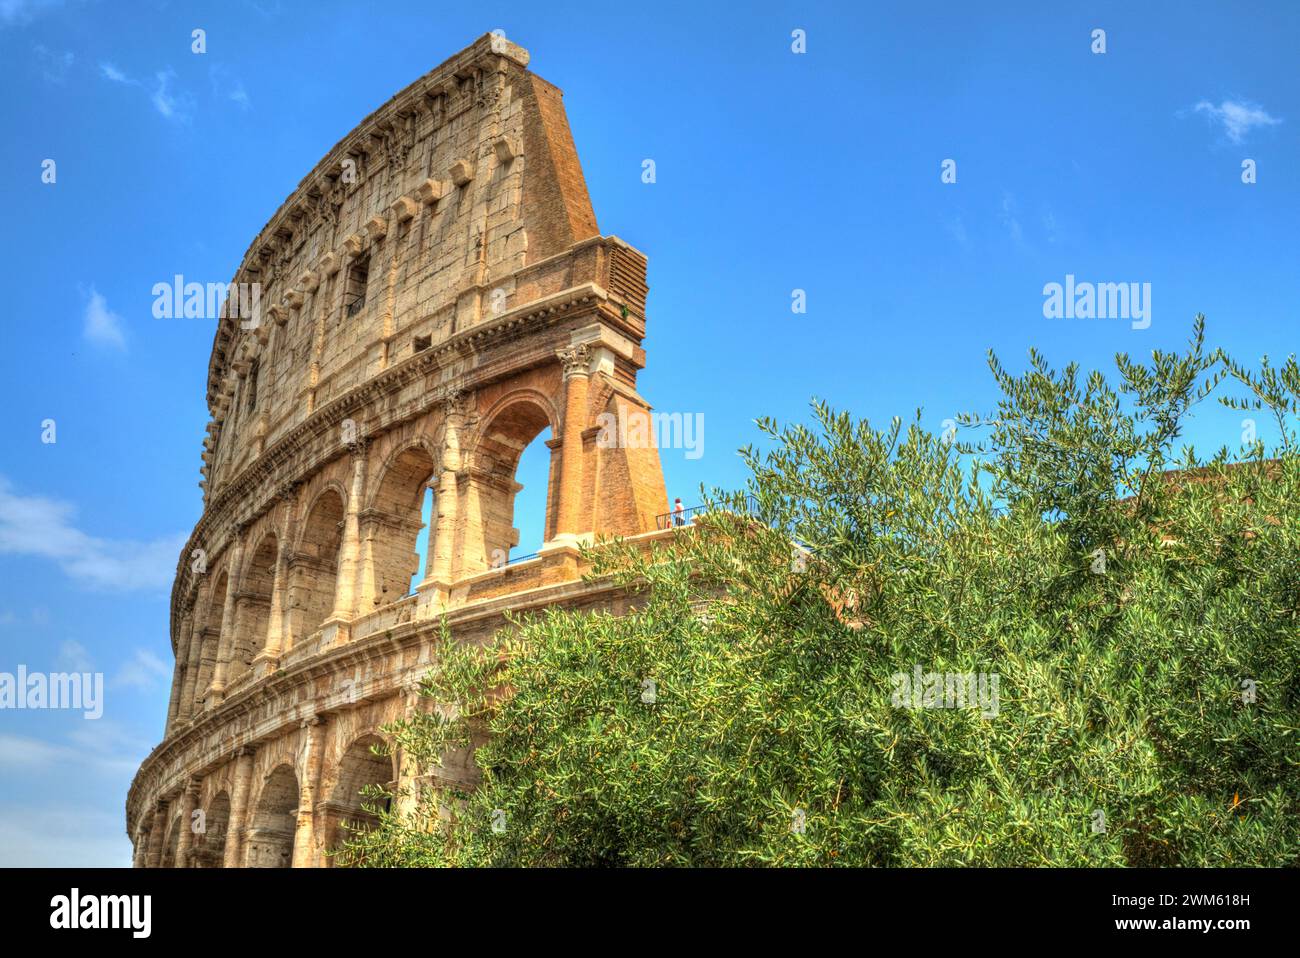 Une magnifique structure romaine sous un ciel bleu clair, entourée d'une végétation luxuriante Banque D'Images